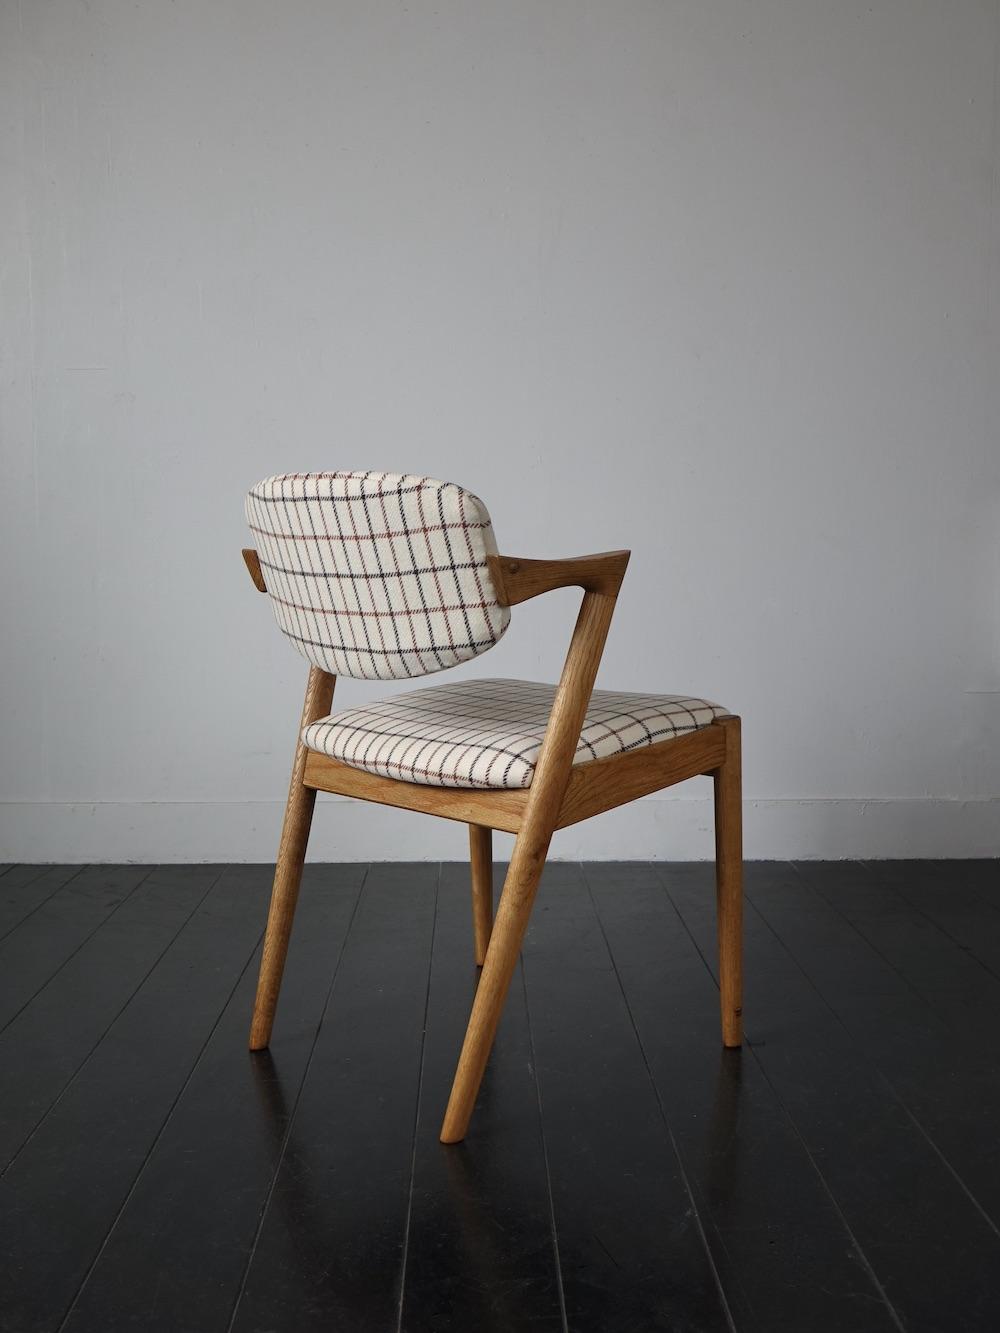 Dining chair “No.42” by Kai Kristiansen for Schou Andersen møbelfabrik